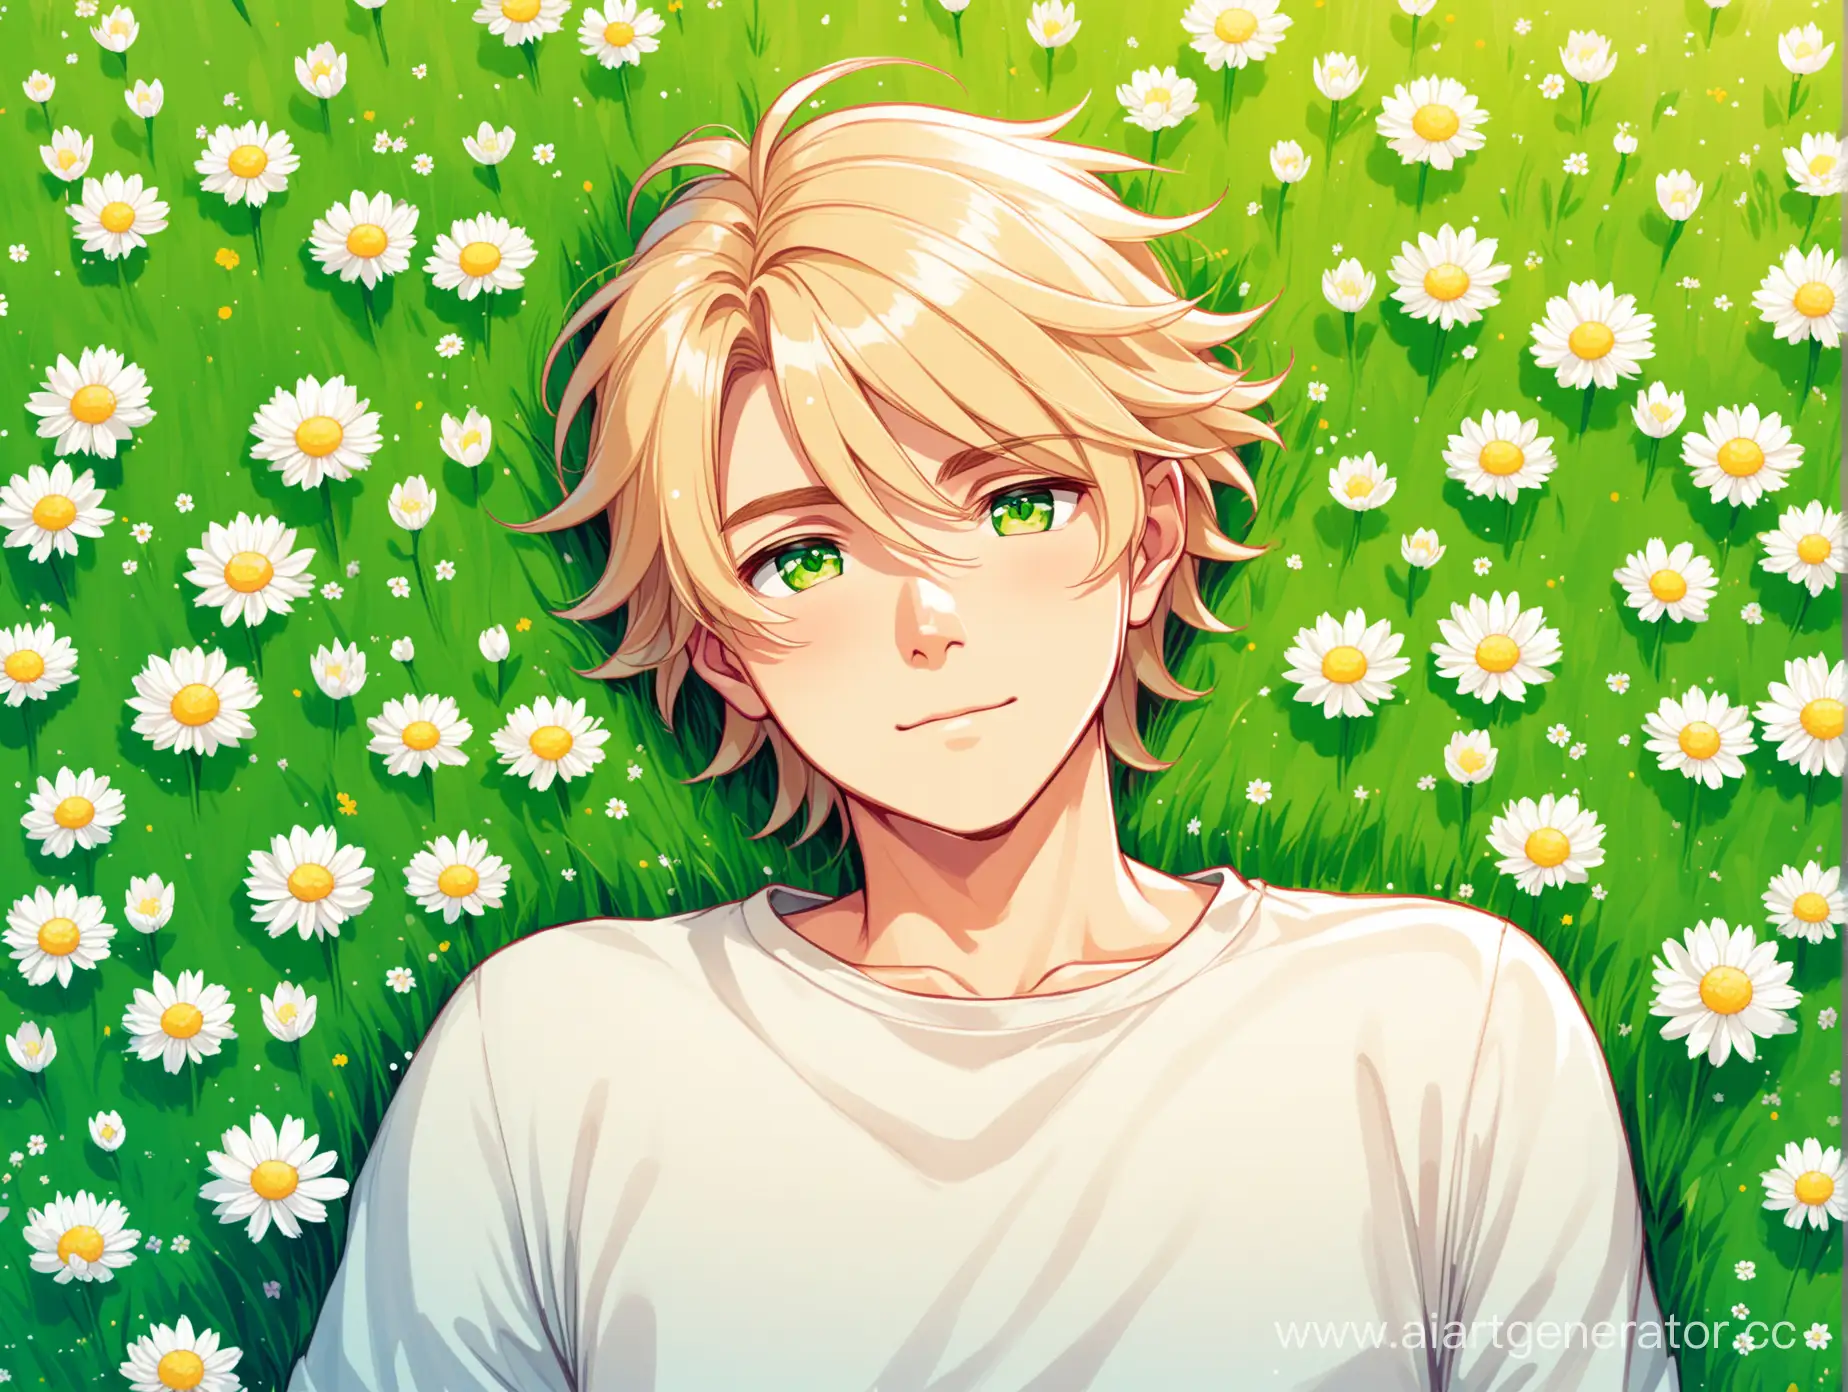 парень с волосами цвета льна в полный рост, лежа на поле, зеленые глаза, весна, цветы, стиль мульт